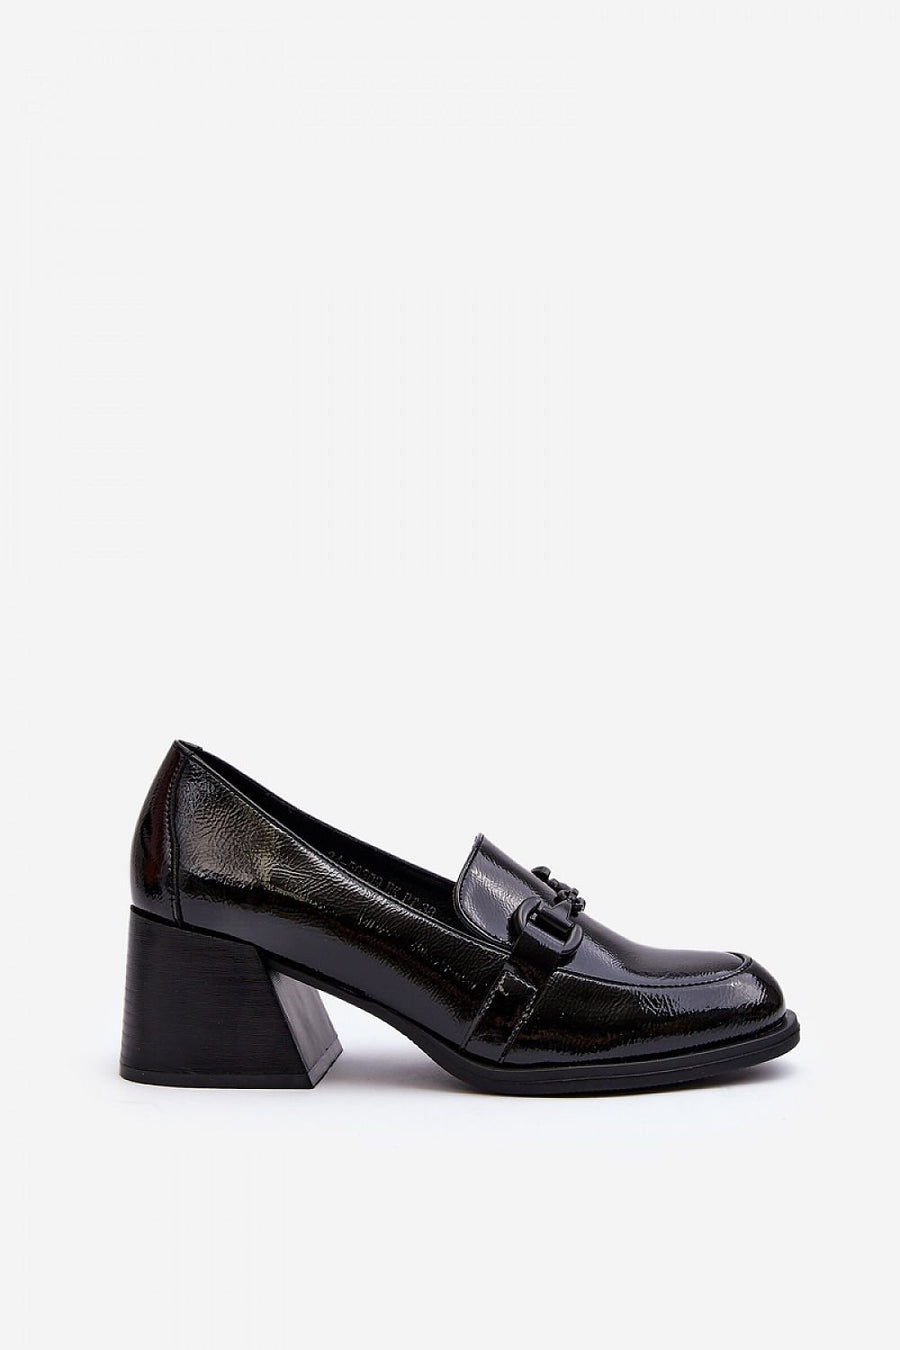 Schuhe mit Absatz Model 192916 Step in style